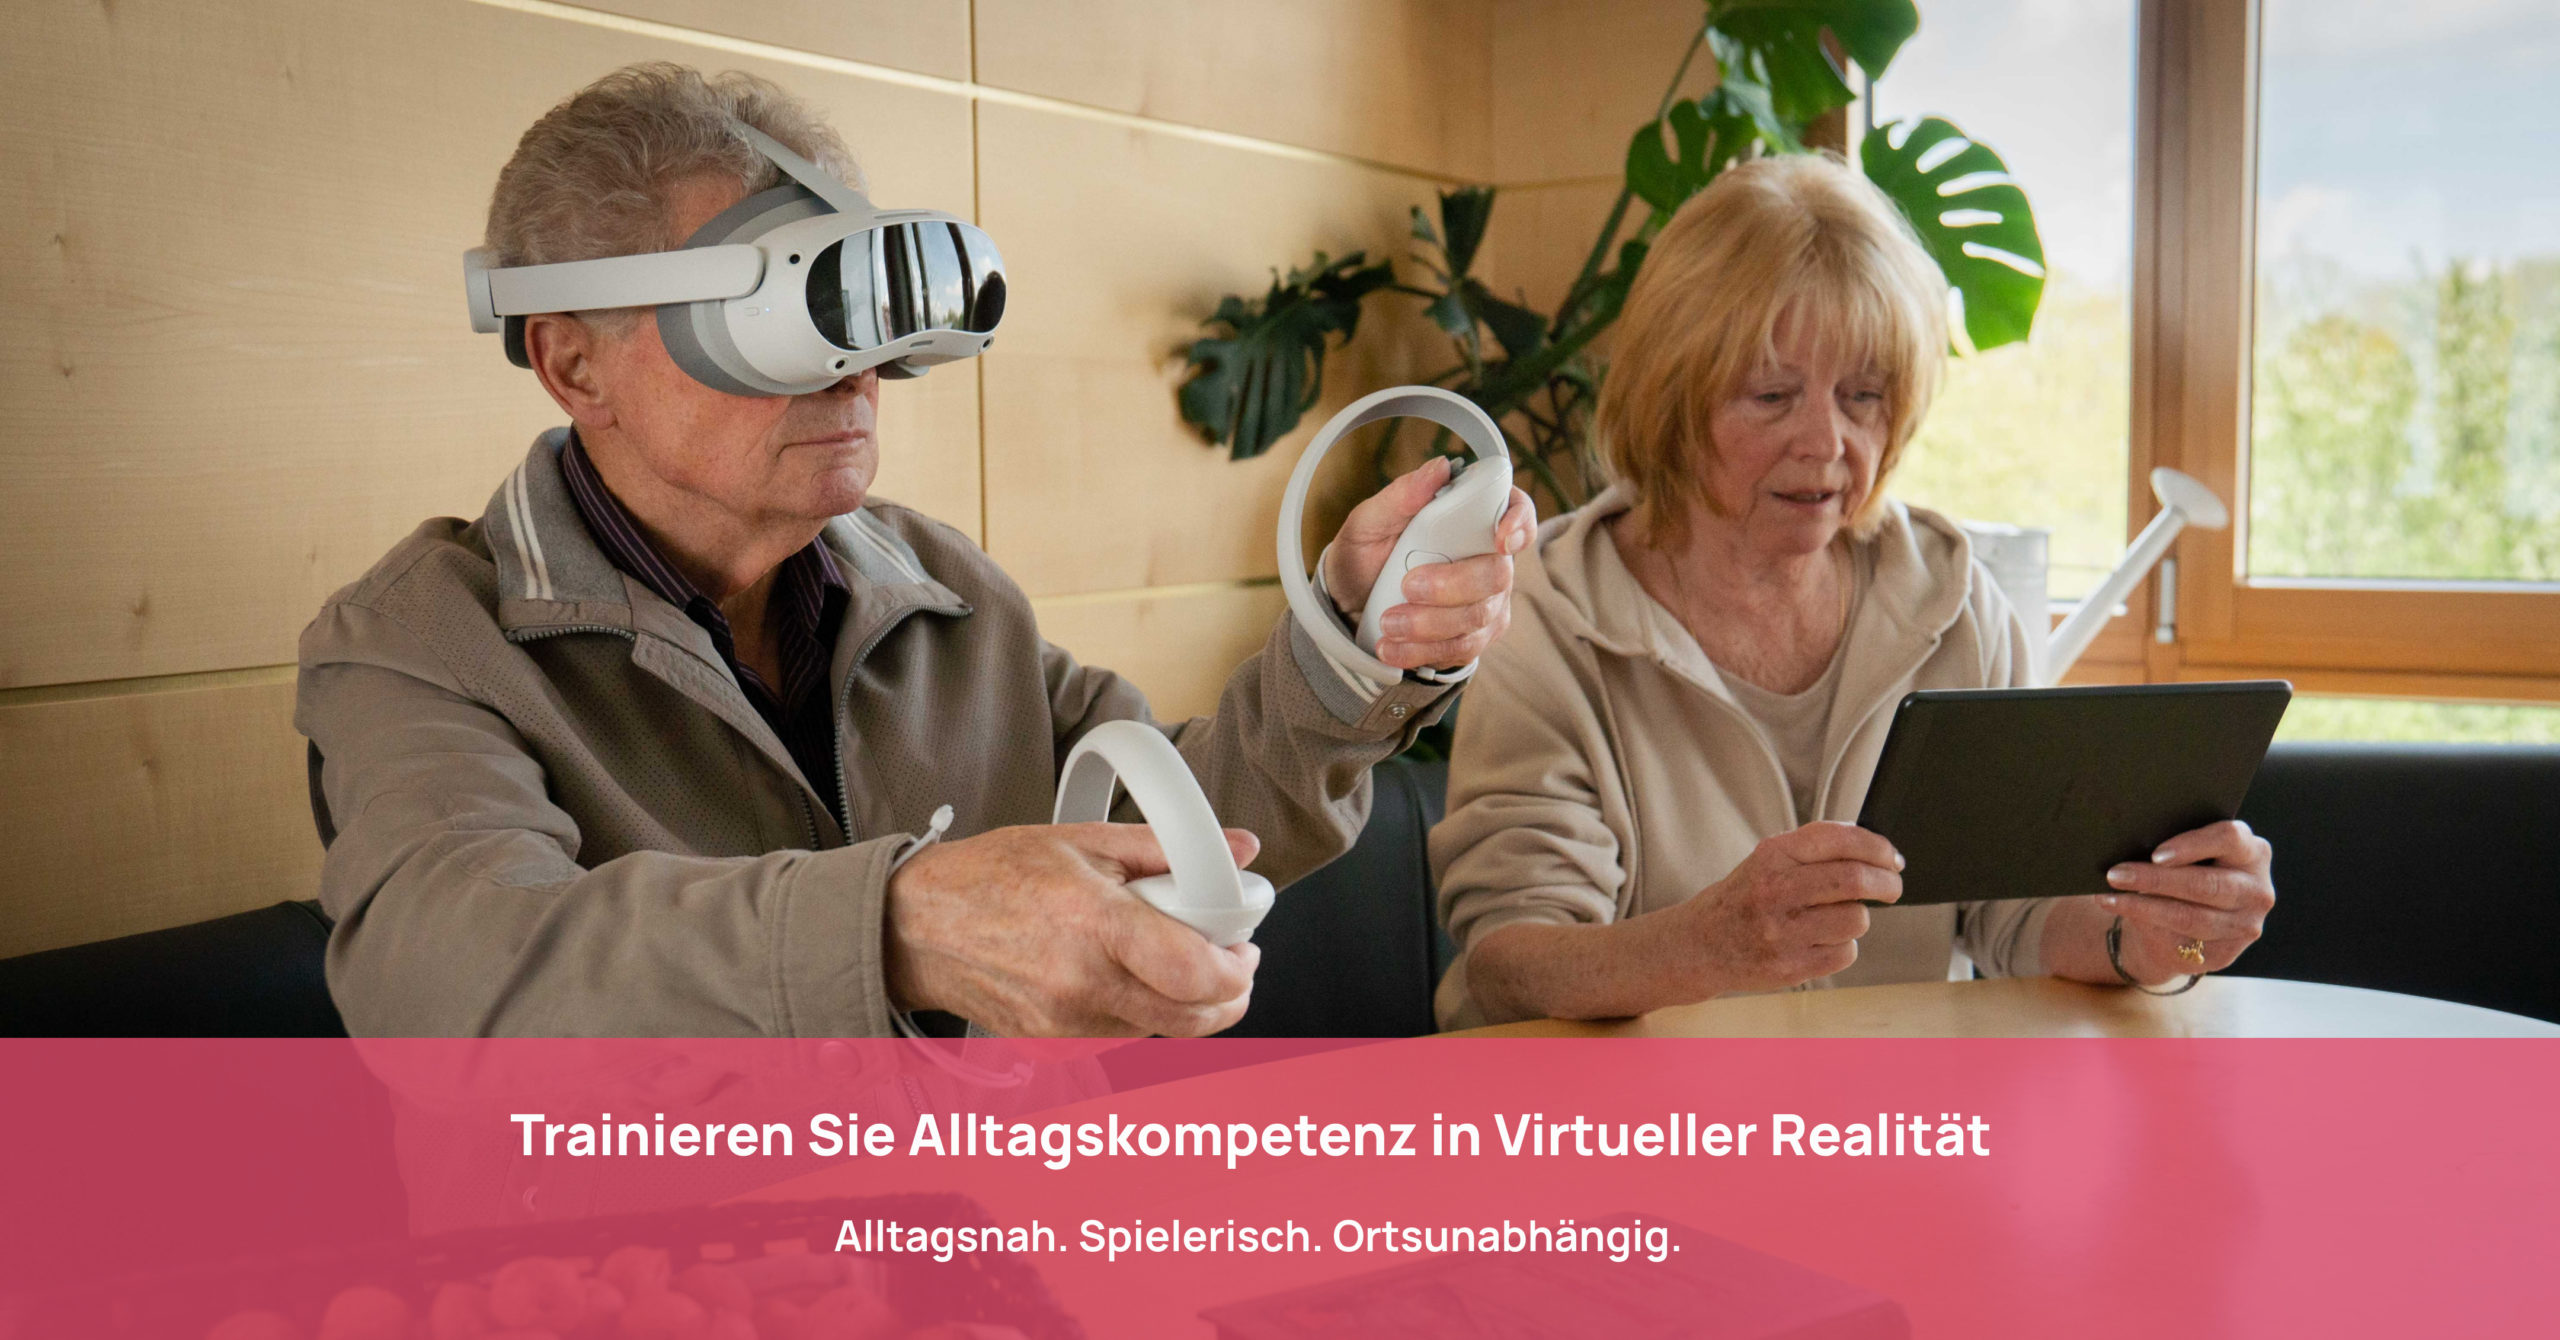 Senior*innen trainieren gemeinsam mit Tablet und VR-Brille